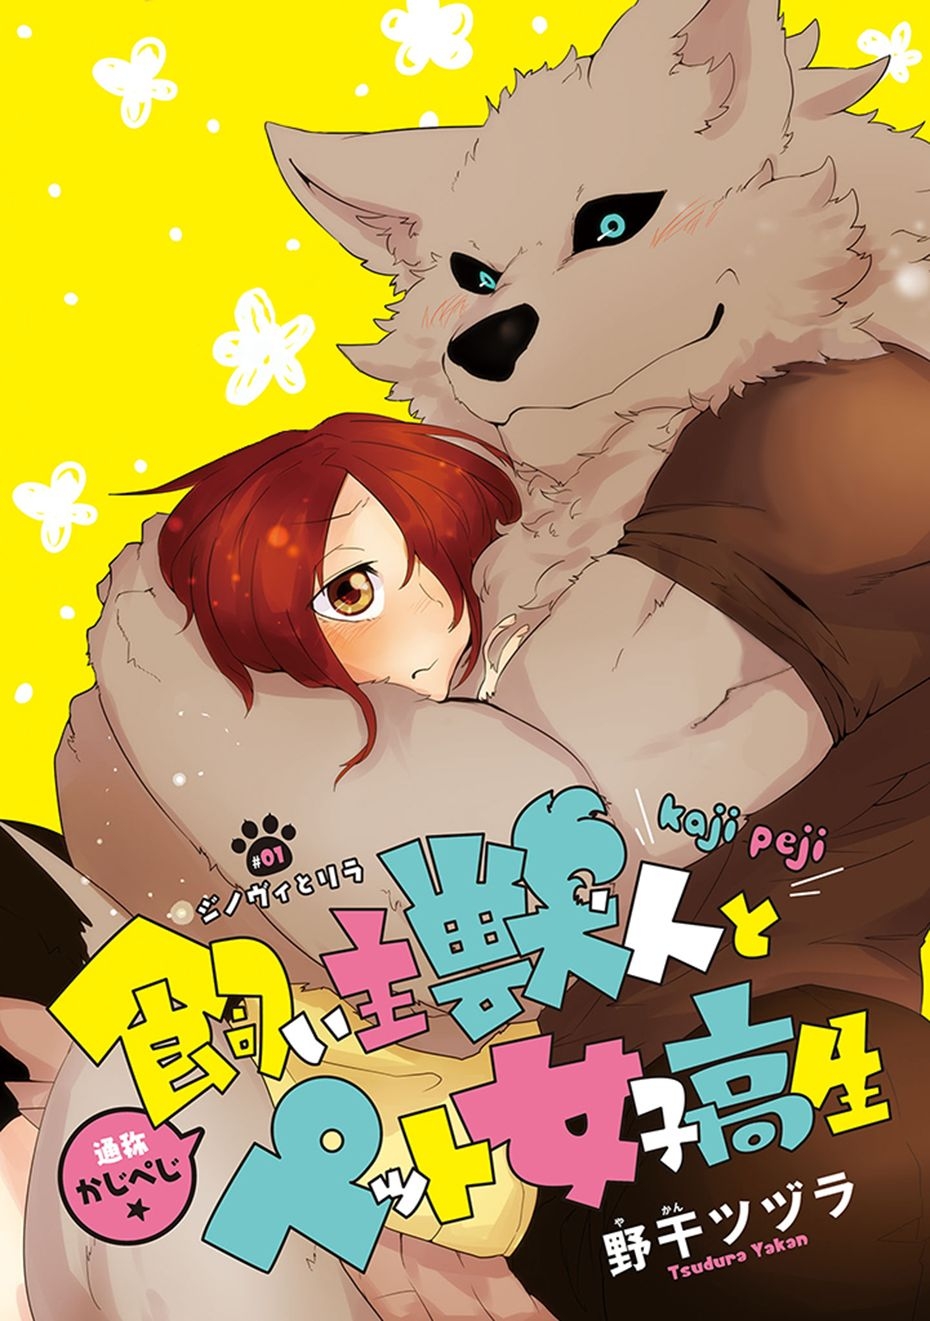 [Yakantuzura] The Beast and His Pet High School Girl Redux [English] (Updated: 7/13/15) 0